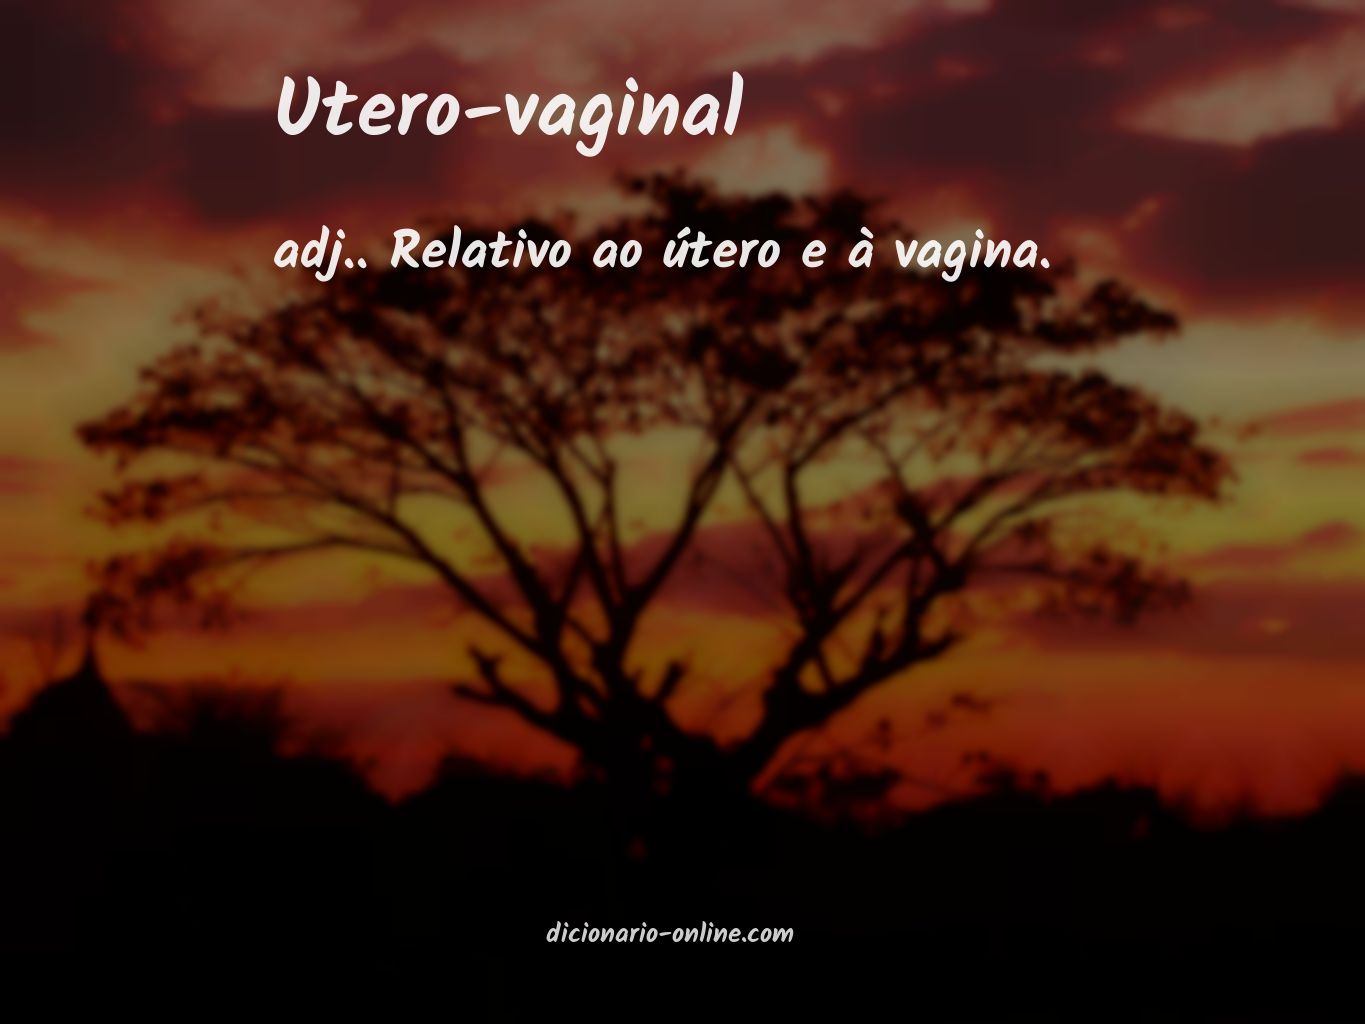 Significado de utero-vaginal